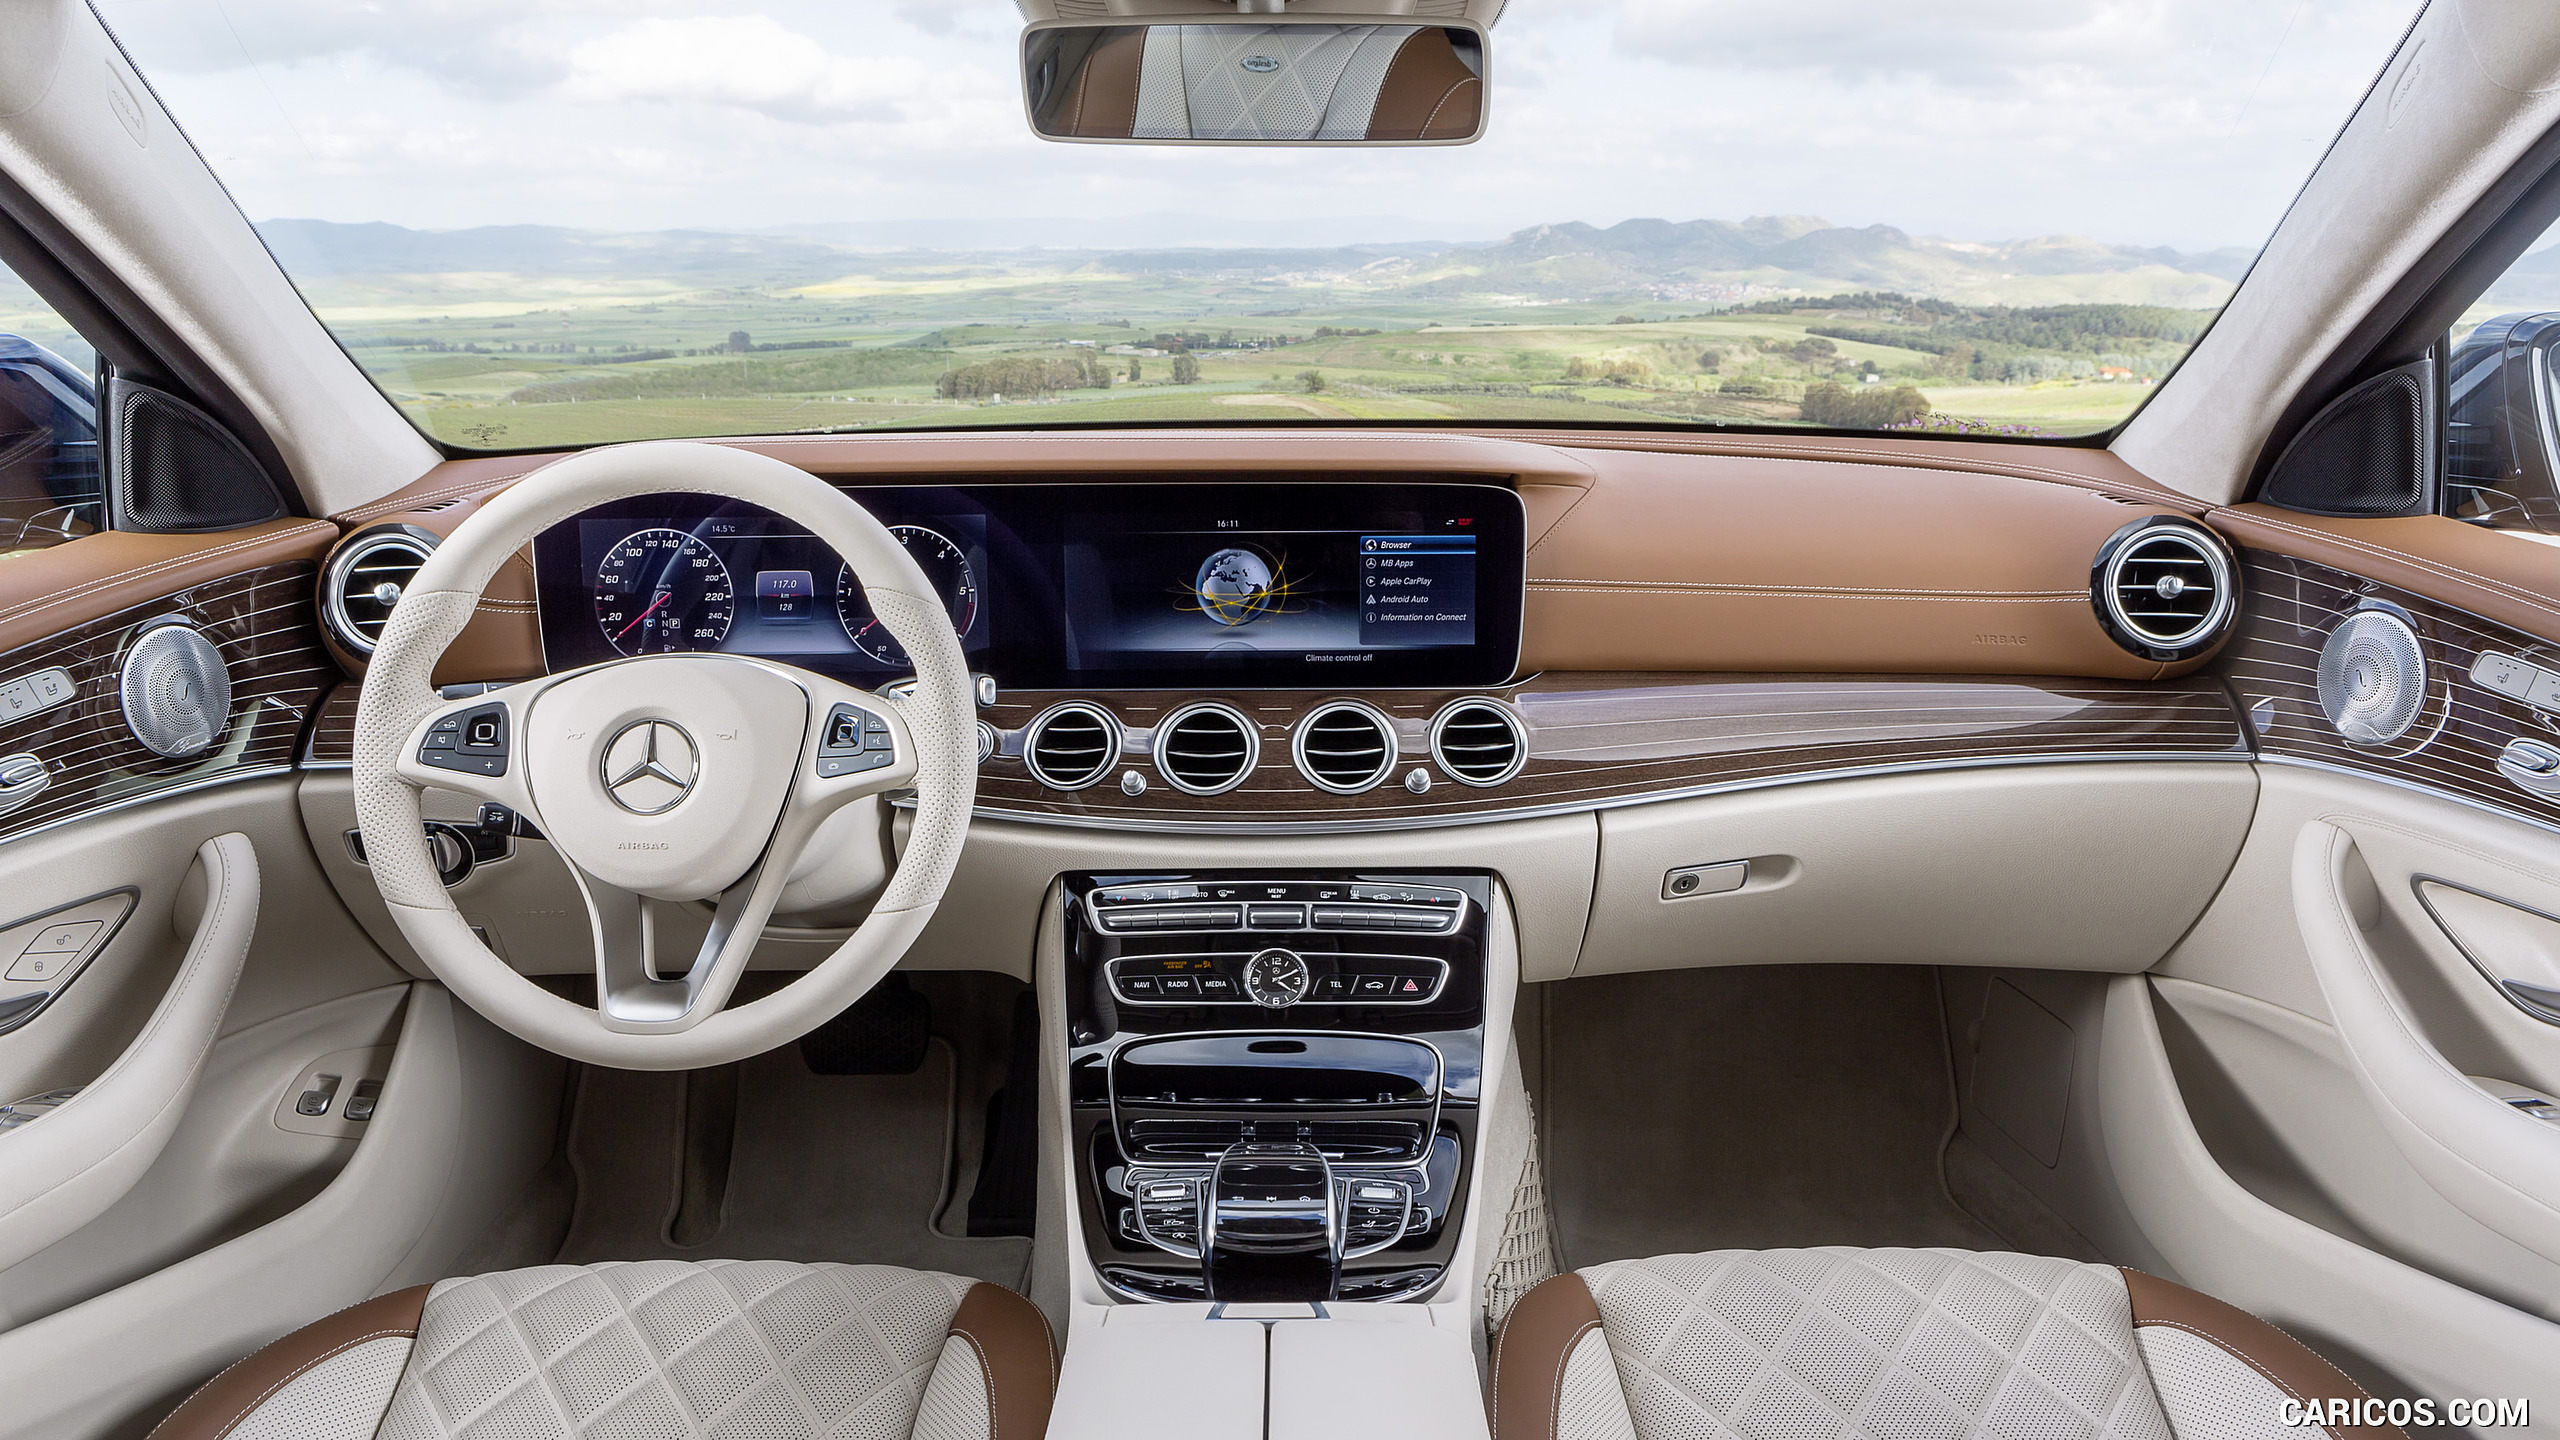 2017 Mercedes-Benz E-Class Estate Exclusive Line - Macchiato Beige / Saddle Brown - Interior, Cockpit, #49 of 110